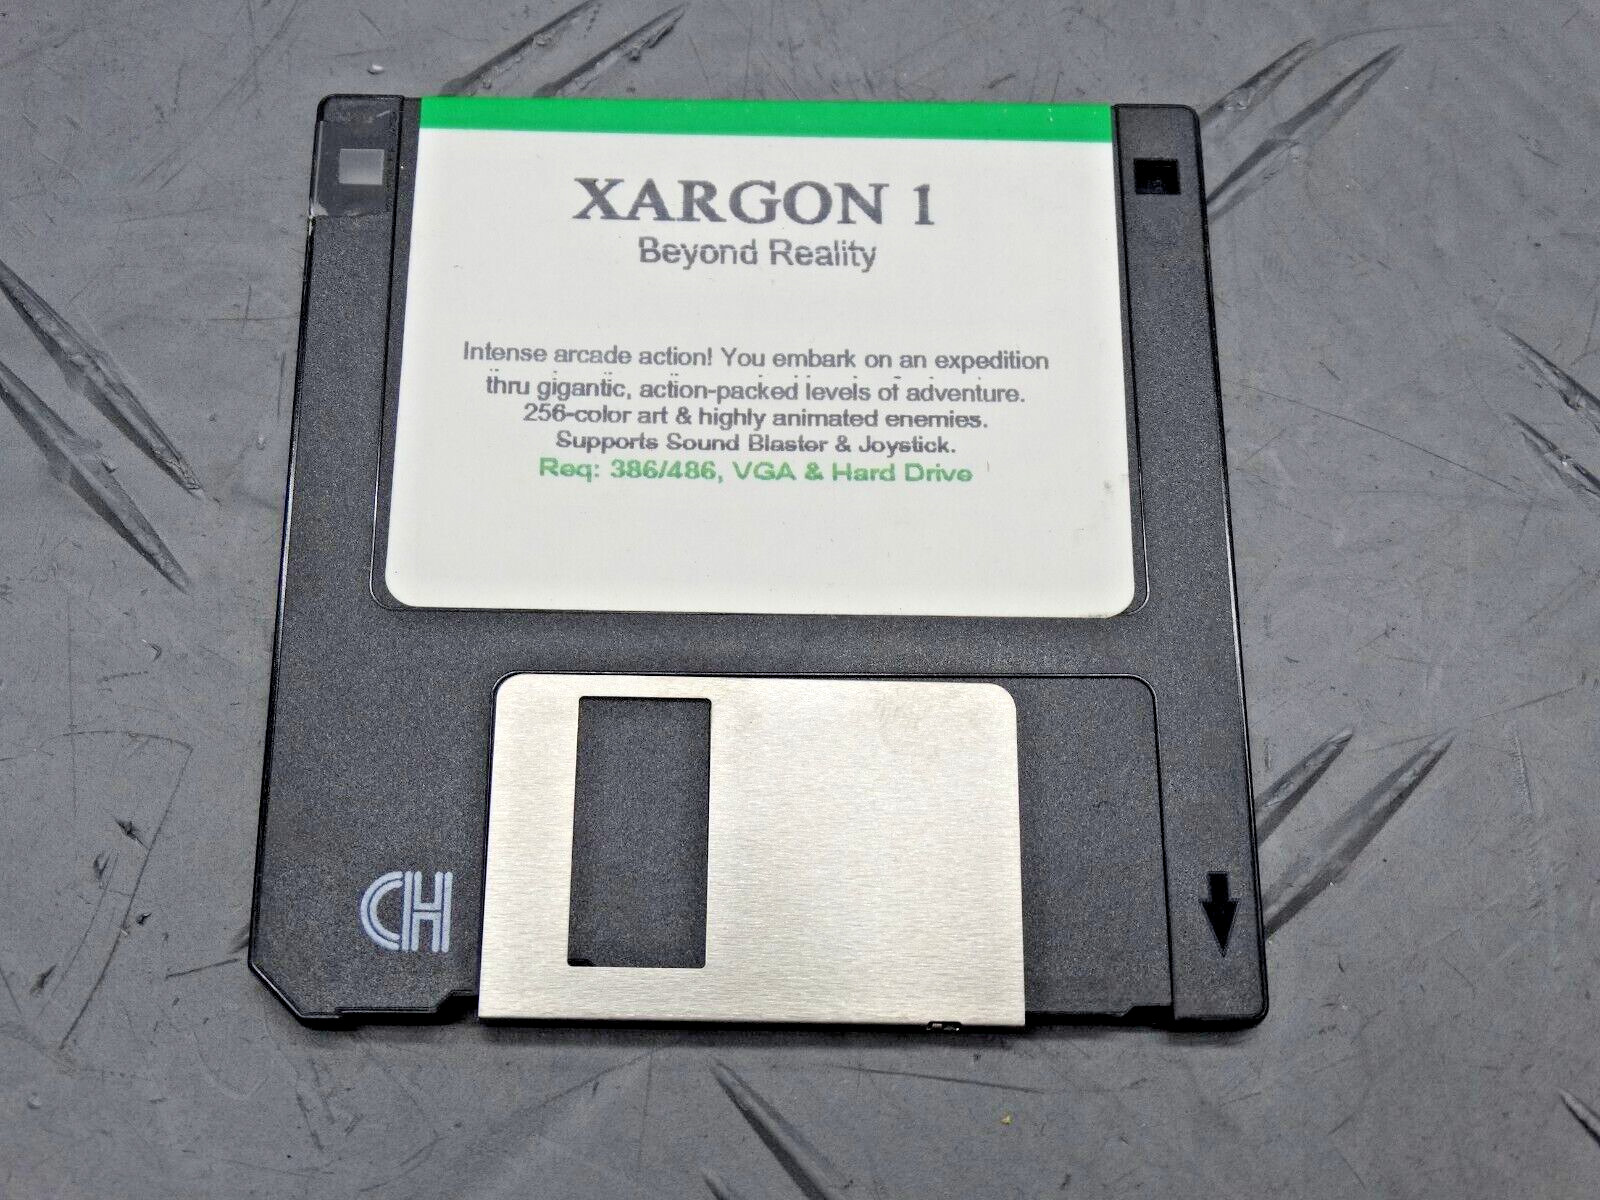 Xargon 1 Beyond Reality RARE Game Floppy 3.5” Floppy Software Vintage